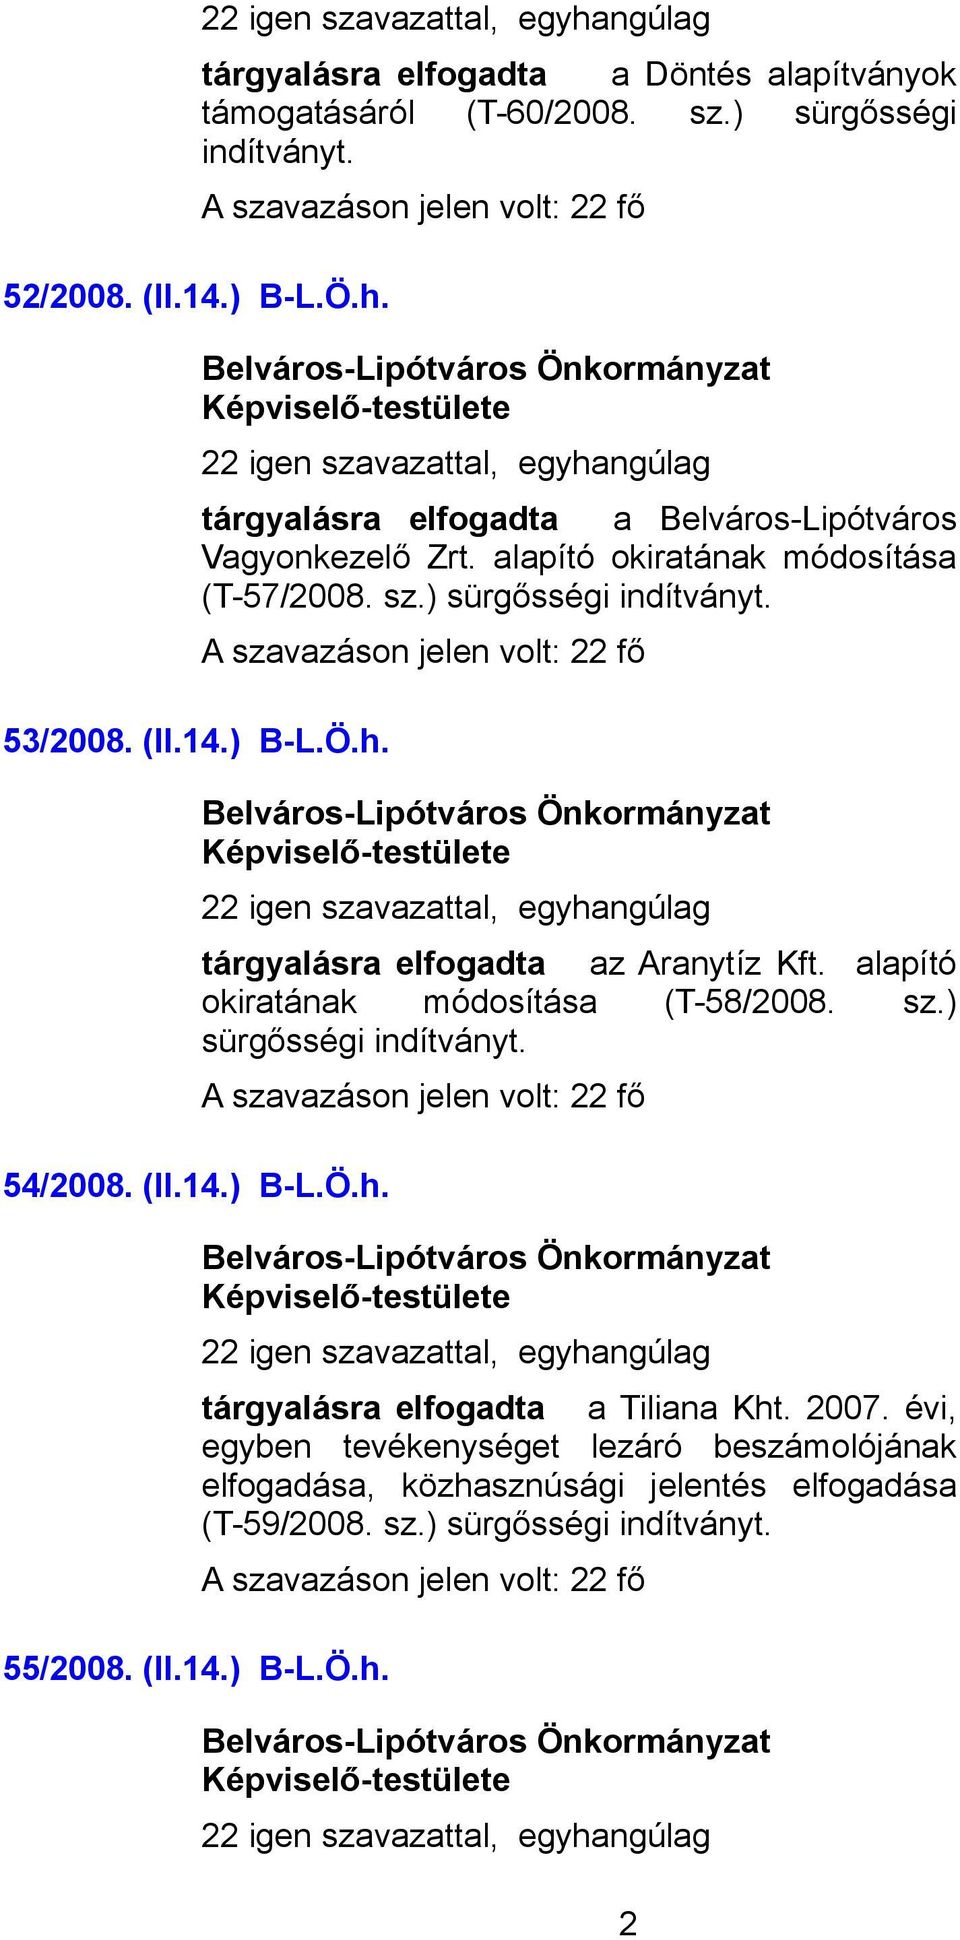 alapító okiratának módosítása (T-58/2008. sz.) sürgősségi indítványt. 54/2008. (II.14.) B-L.Ö.h. 22 igen szavazattal, egyhangúlag tárgyalásra elfogadta a Tiliana Kht. 2007.